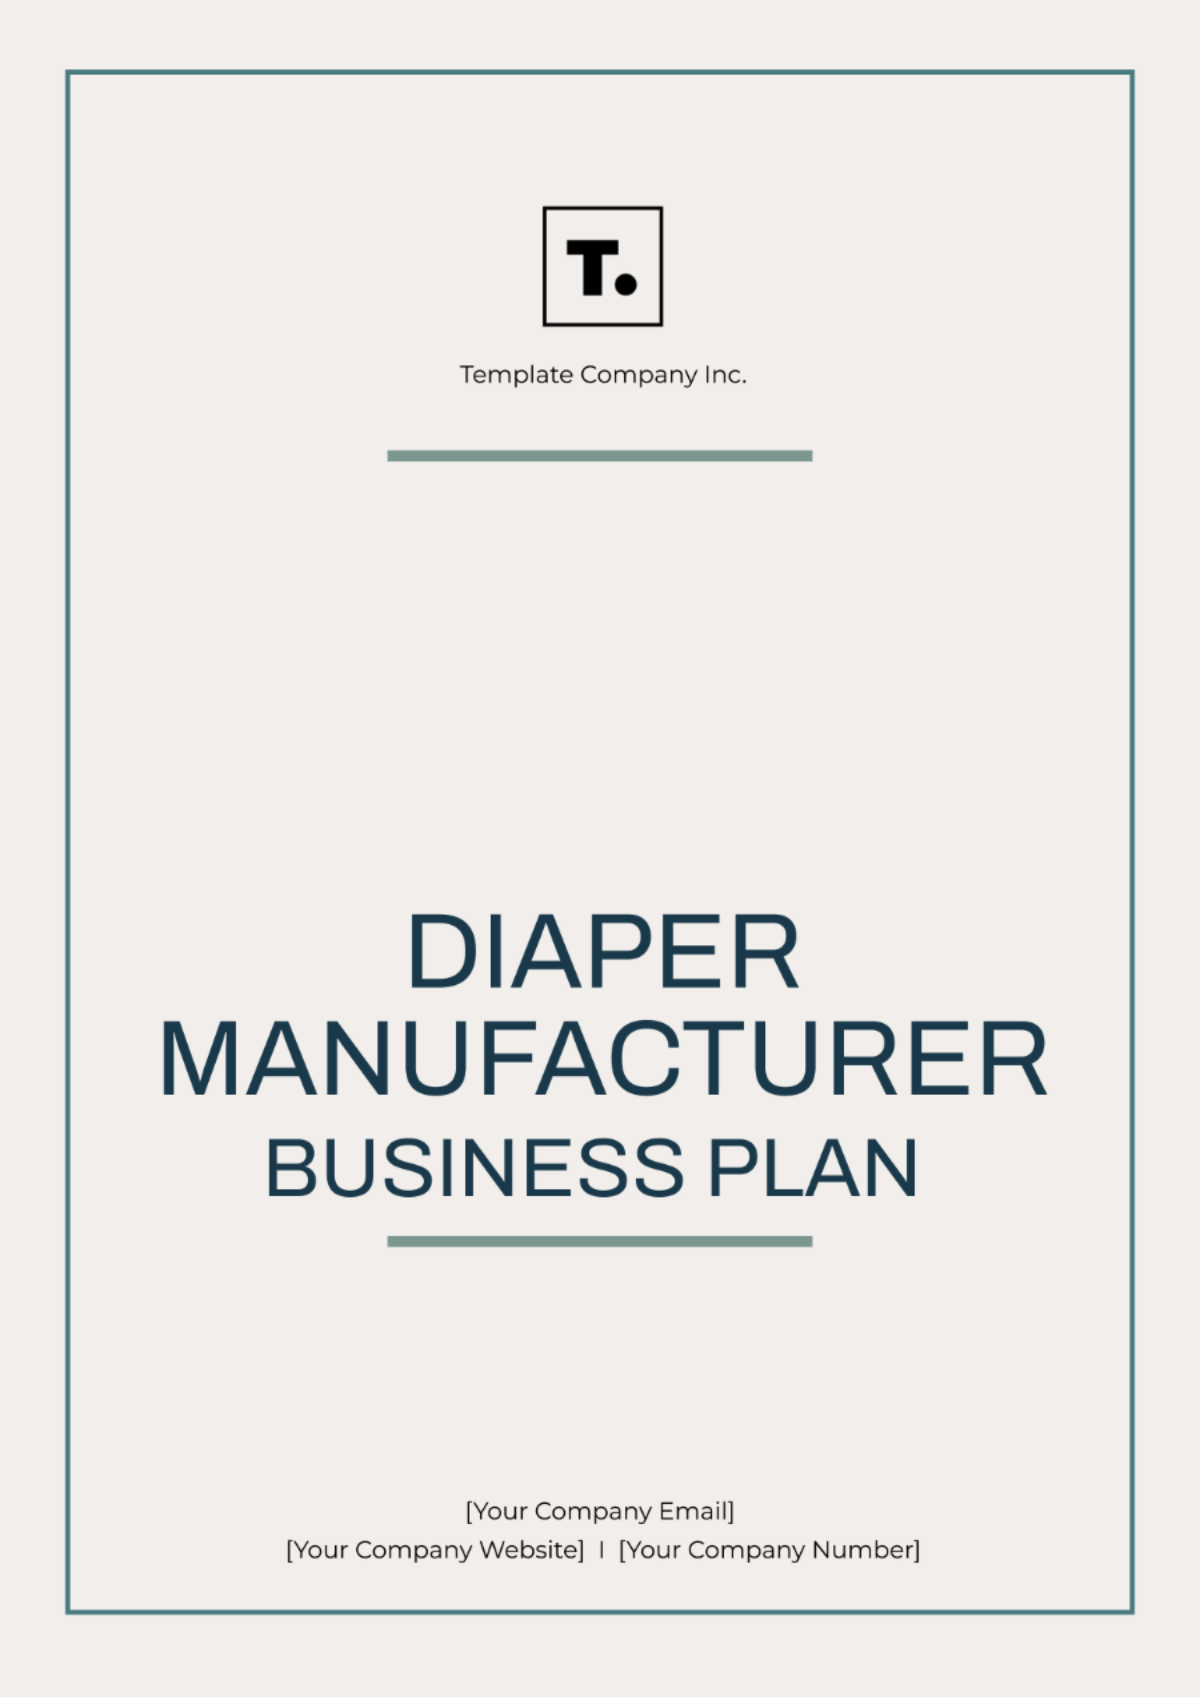 Diaper Manufacturer Business Plan Template